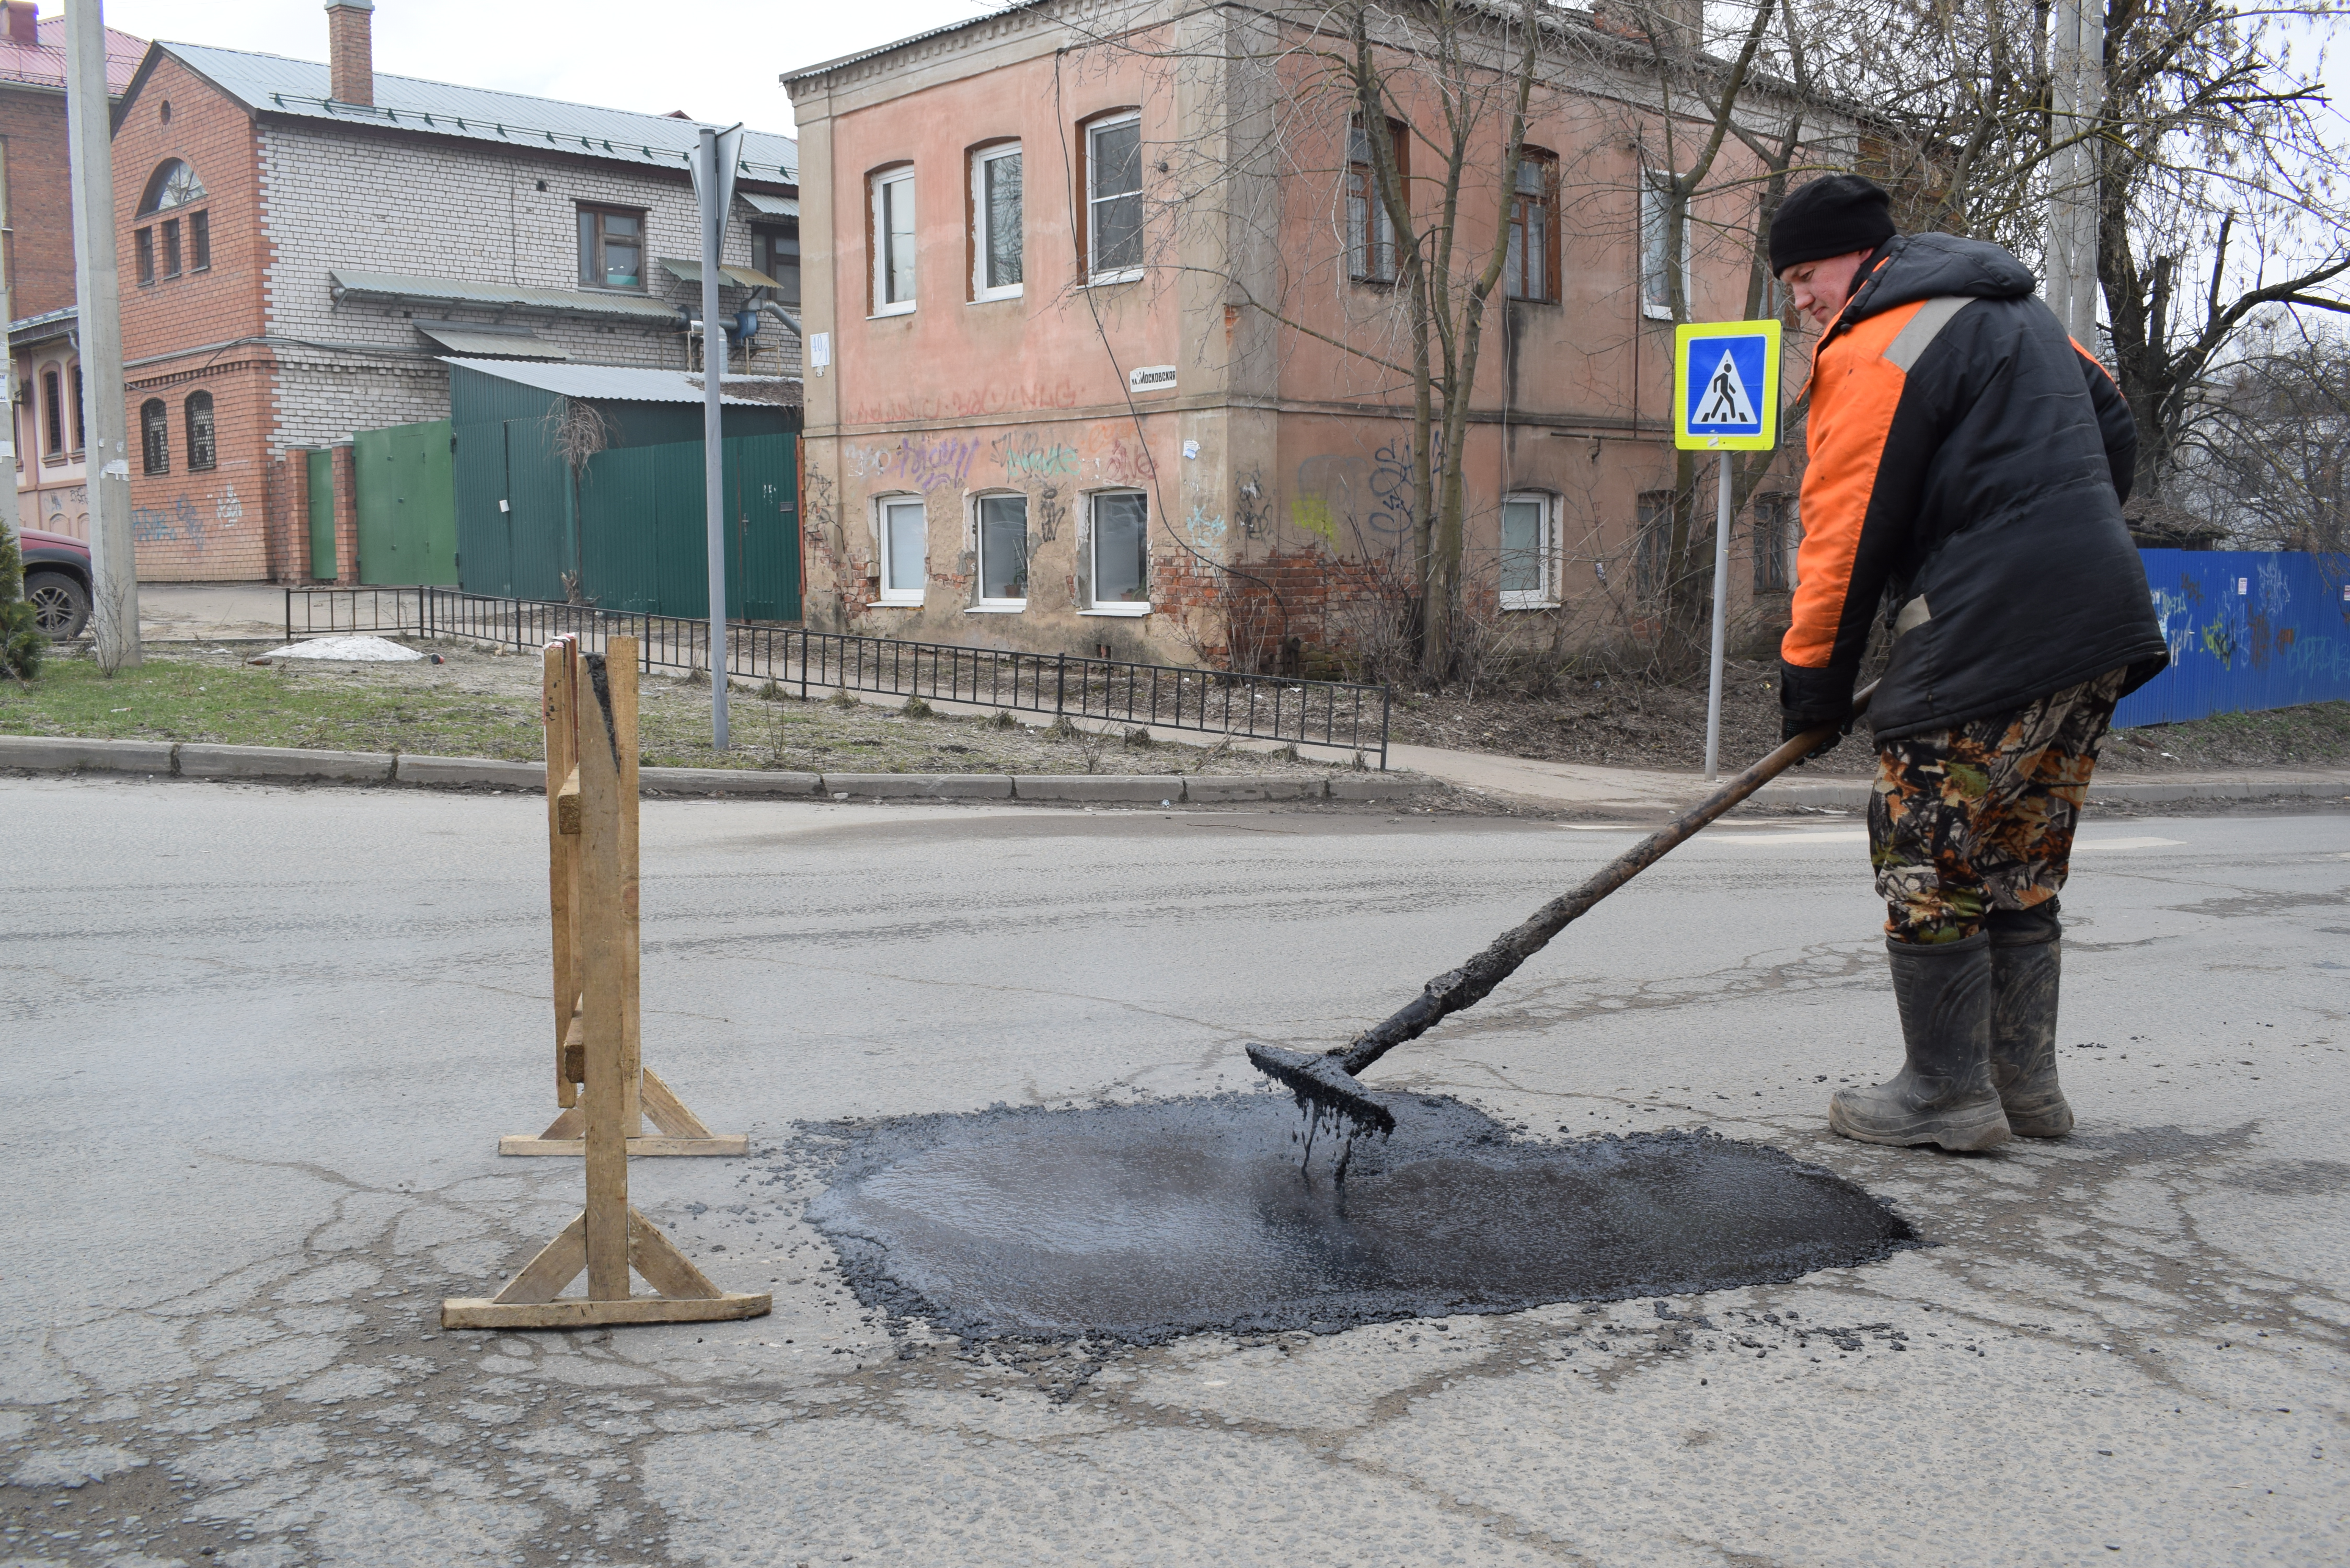 Ямочный ремонт дорог с применением литой и укатываемой а запланирован на улицах Станкостроителей и Садовая.